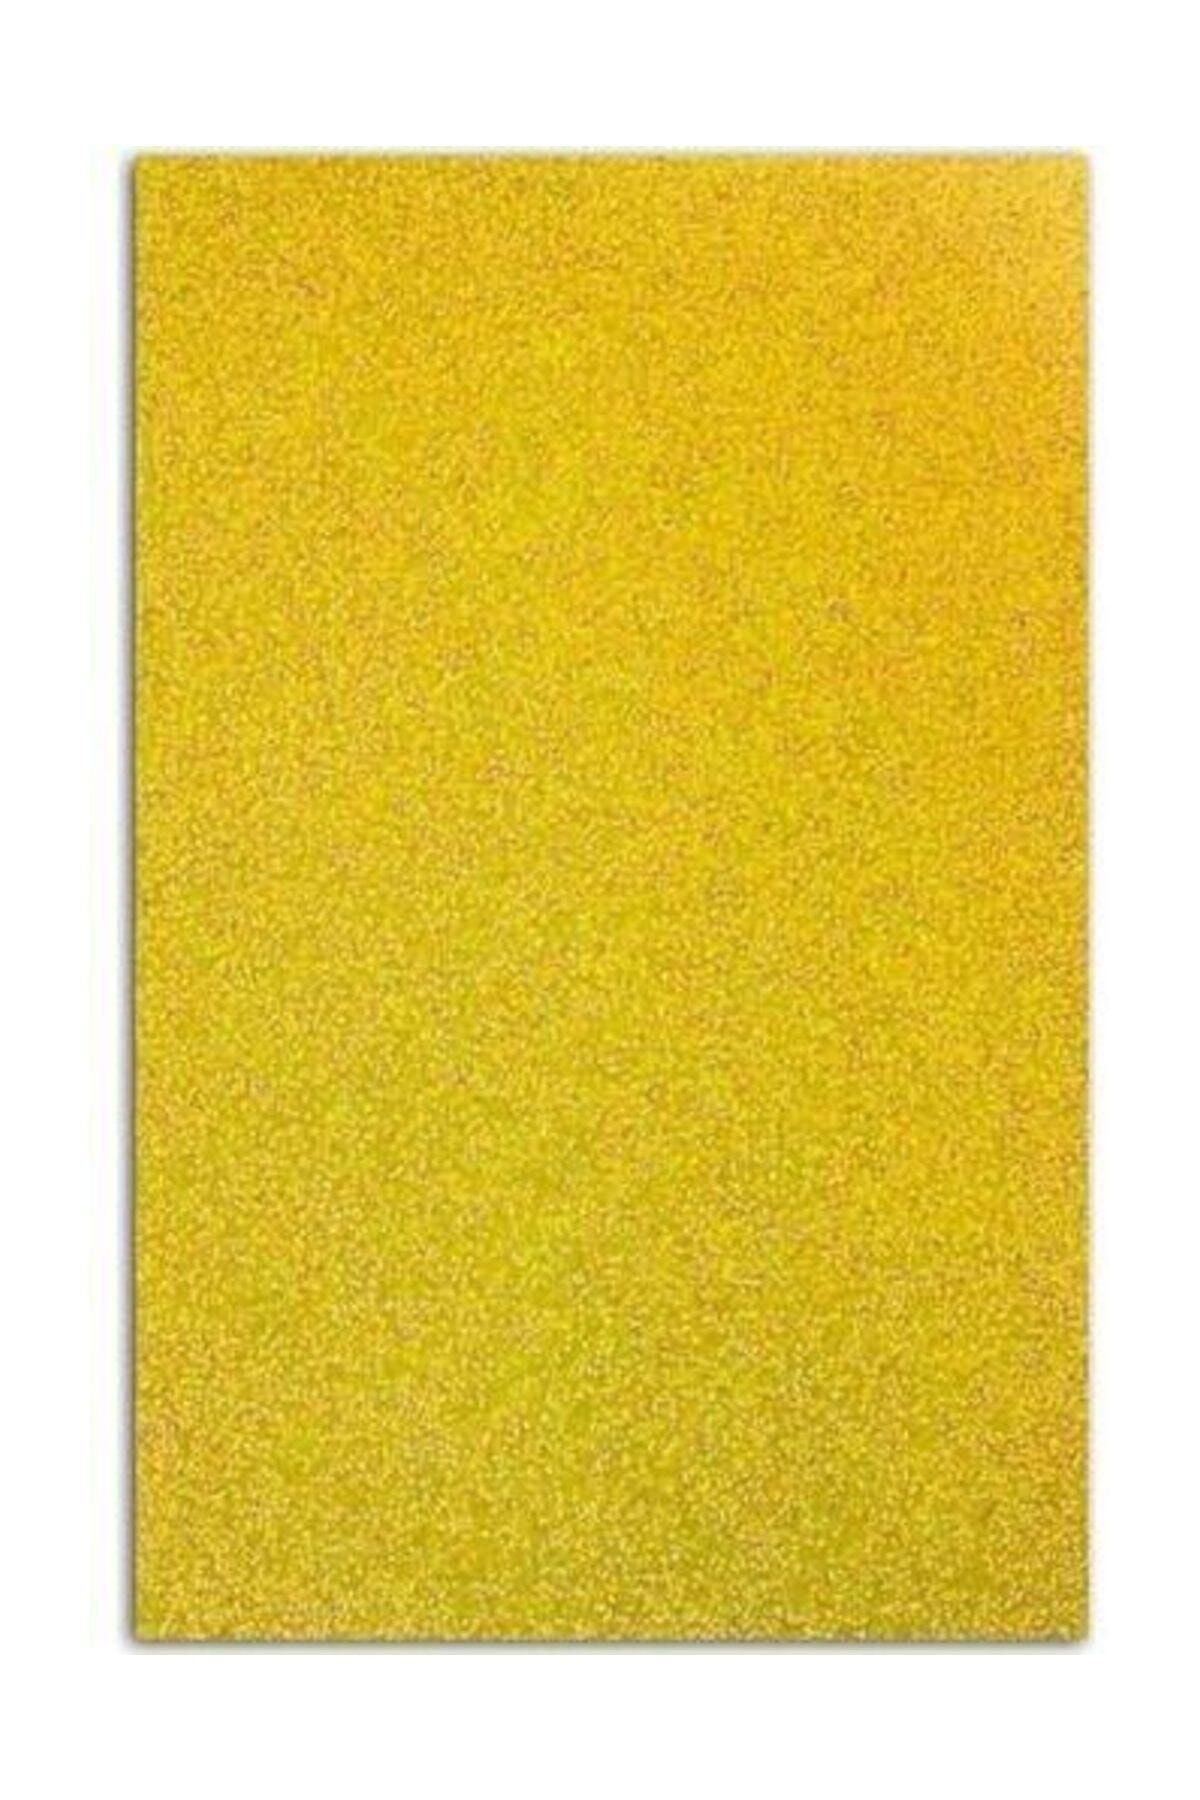 Südor Altın Sarı Simli Eva  50 x 70 cm